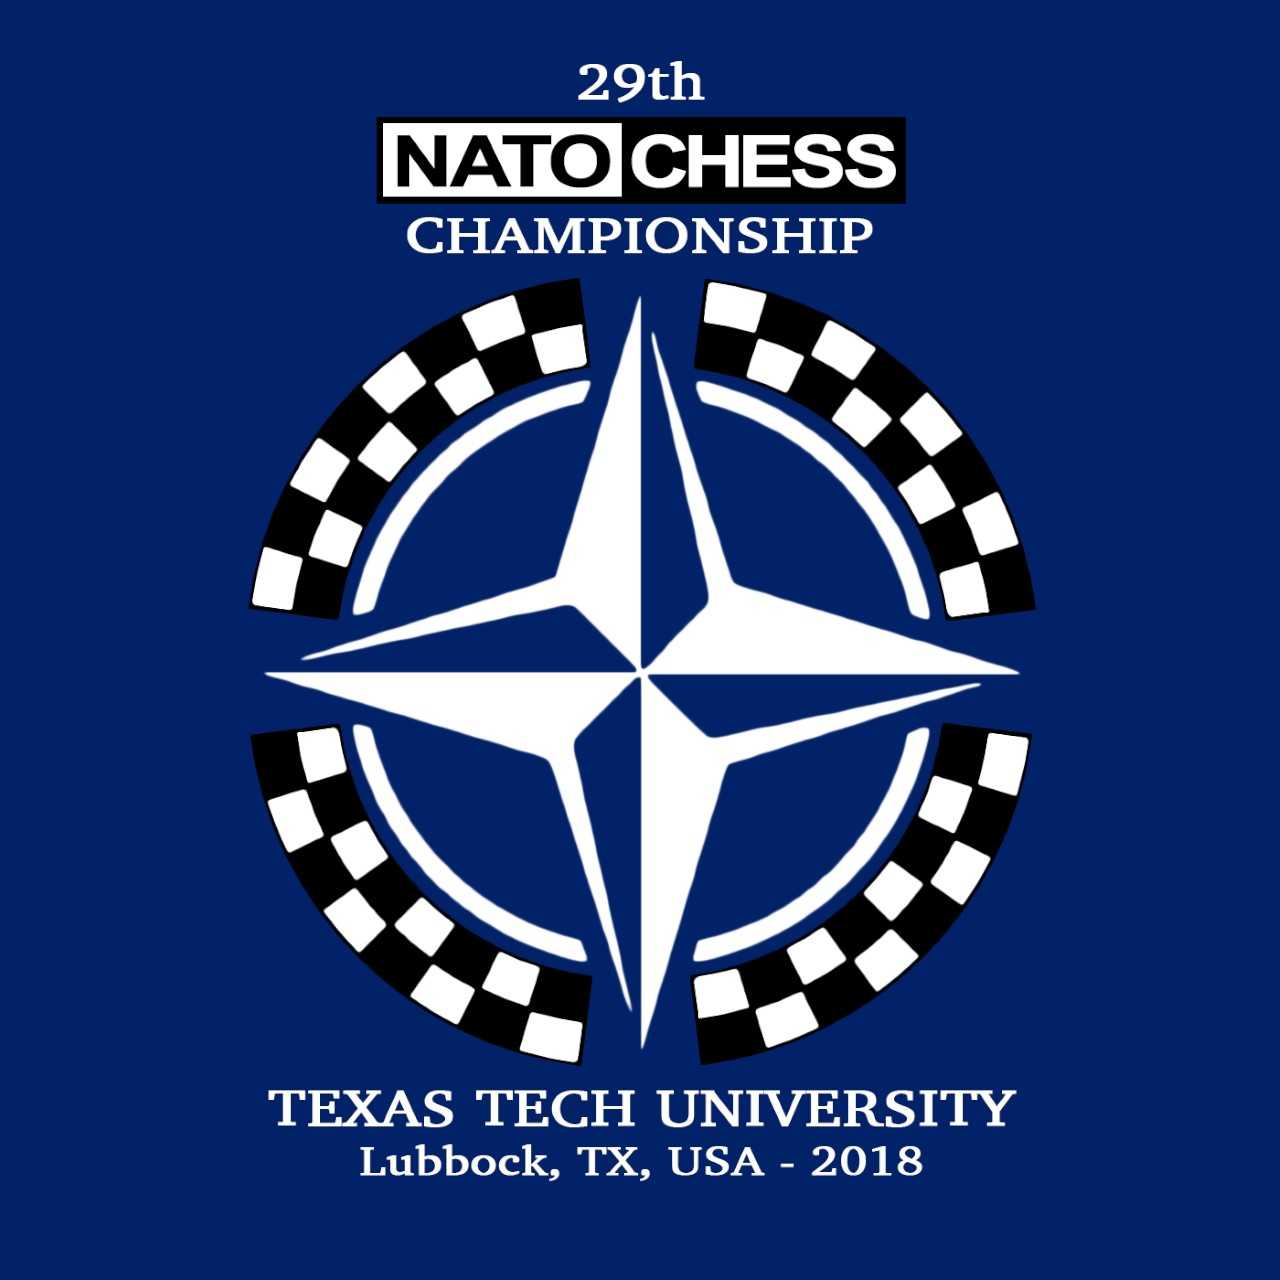 2018 NATO Chess Championship